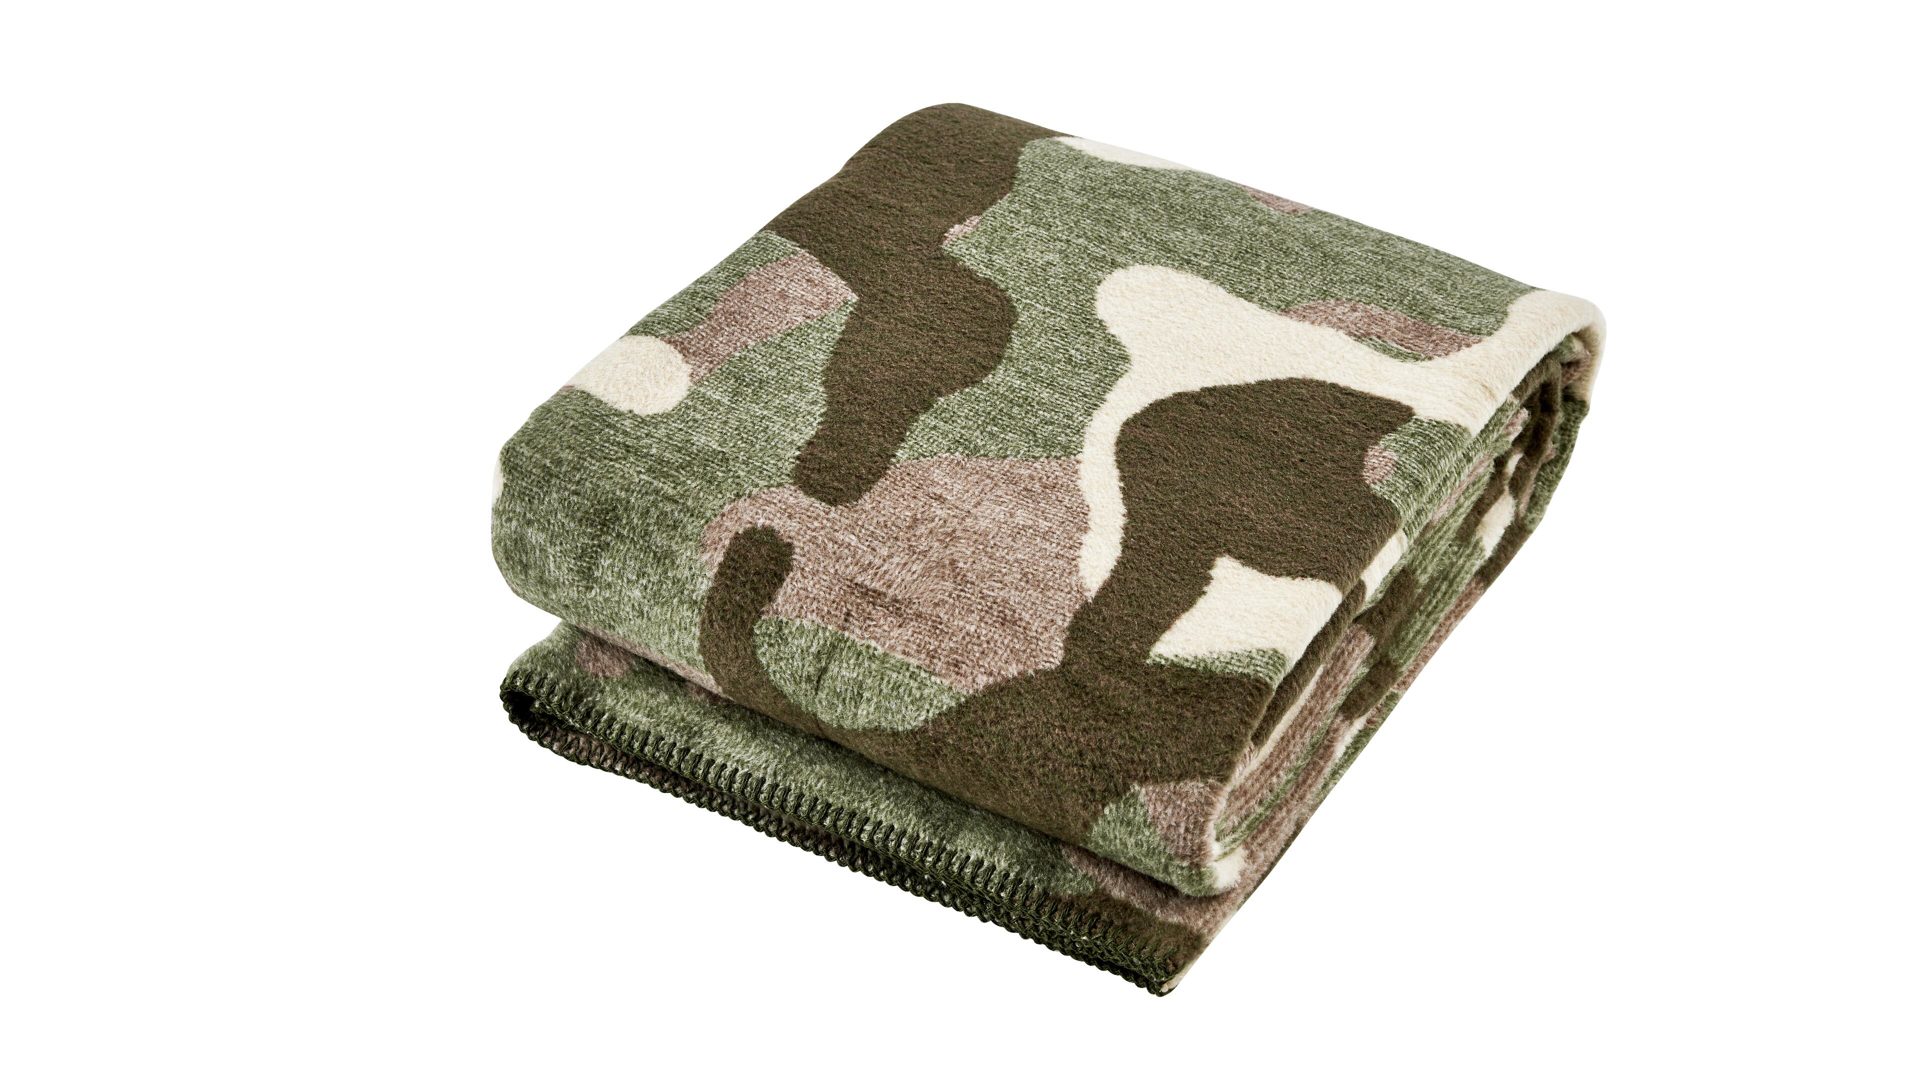 Wohndecke Done.® be different aus Stoff in Braun DONE.® Wohndecke Blanket Camouflage braunes Camouflagemuster – ca. 150 x 200 cm